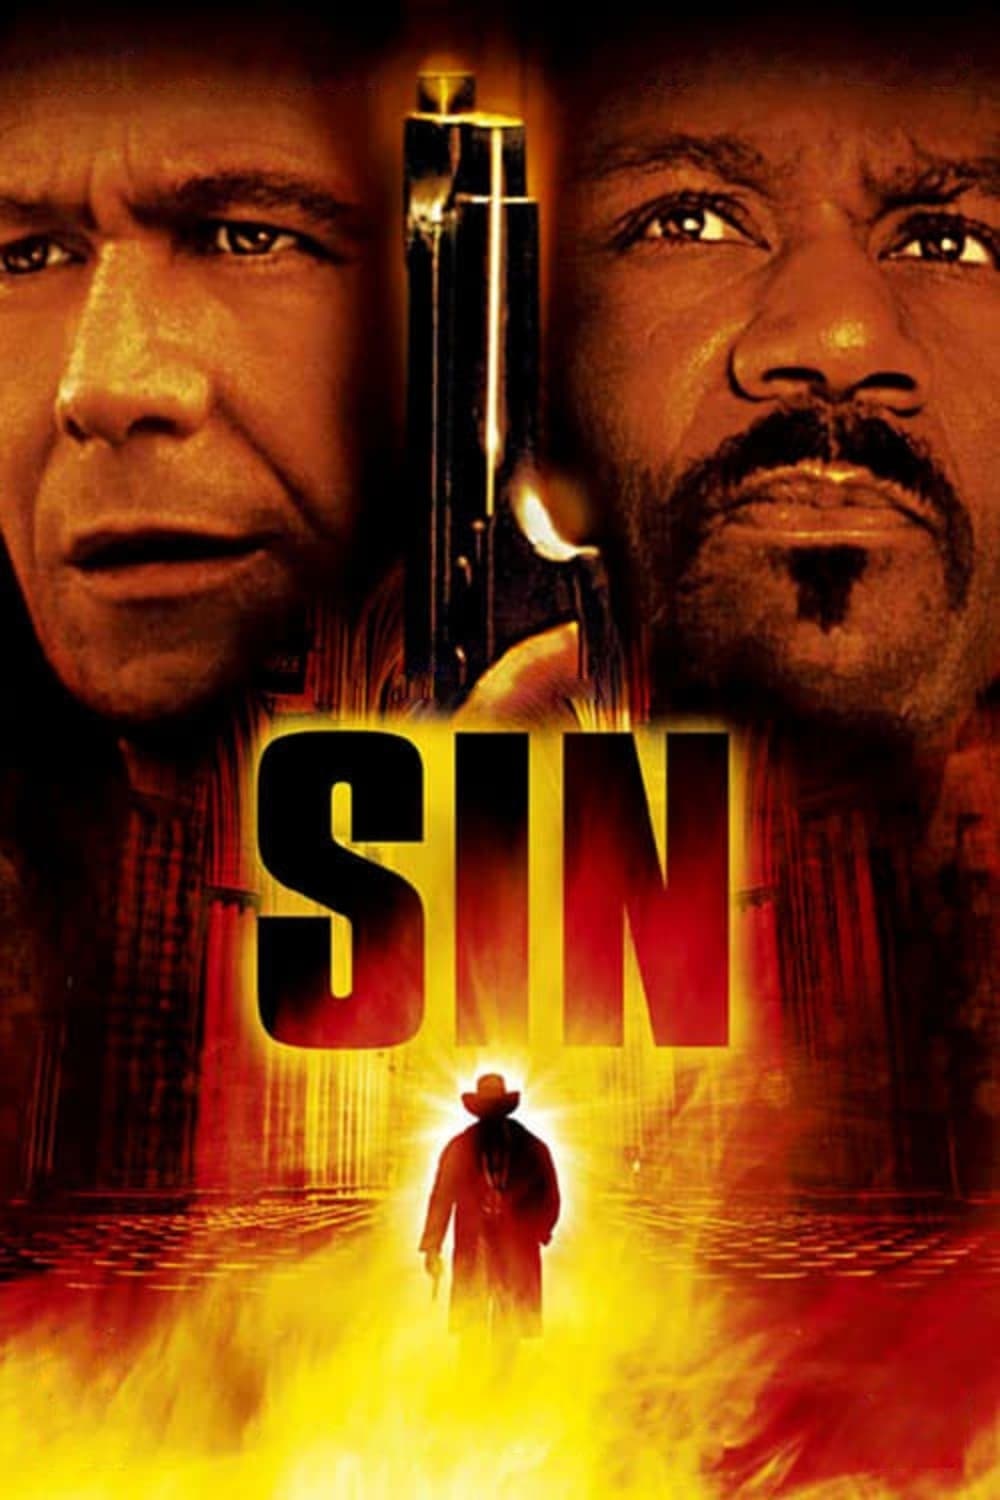 Sin (2003)